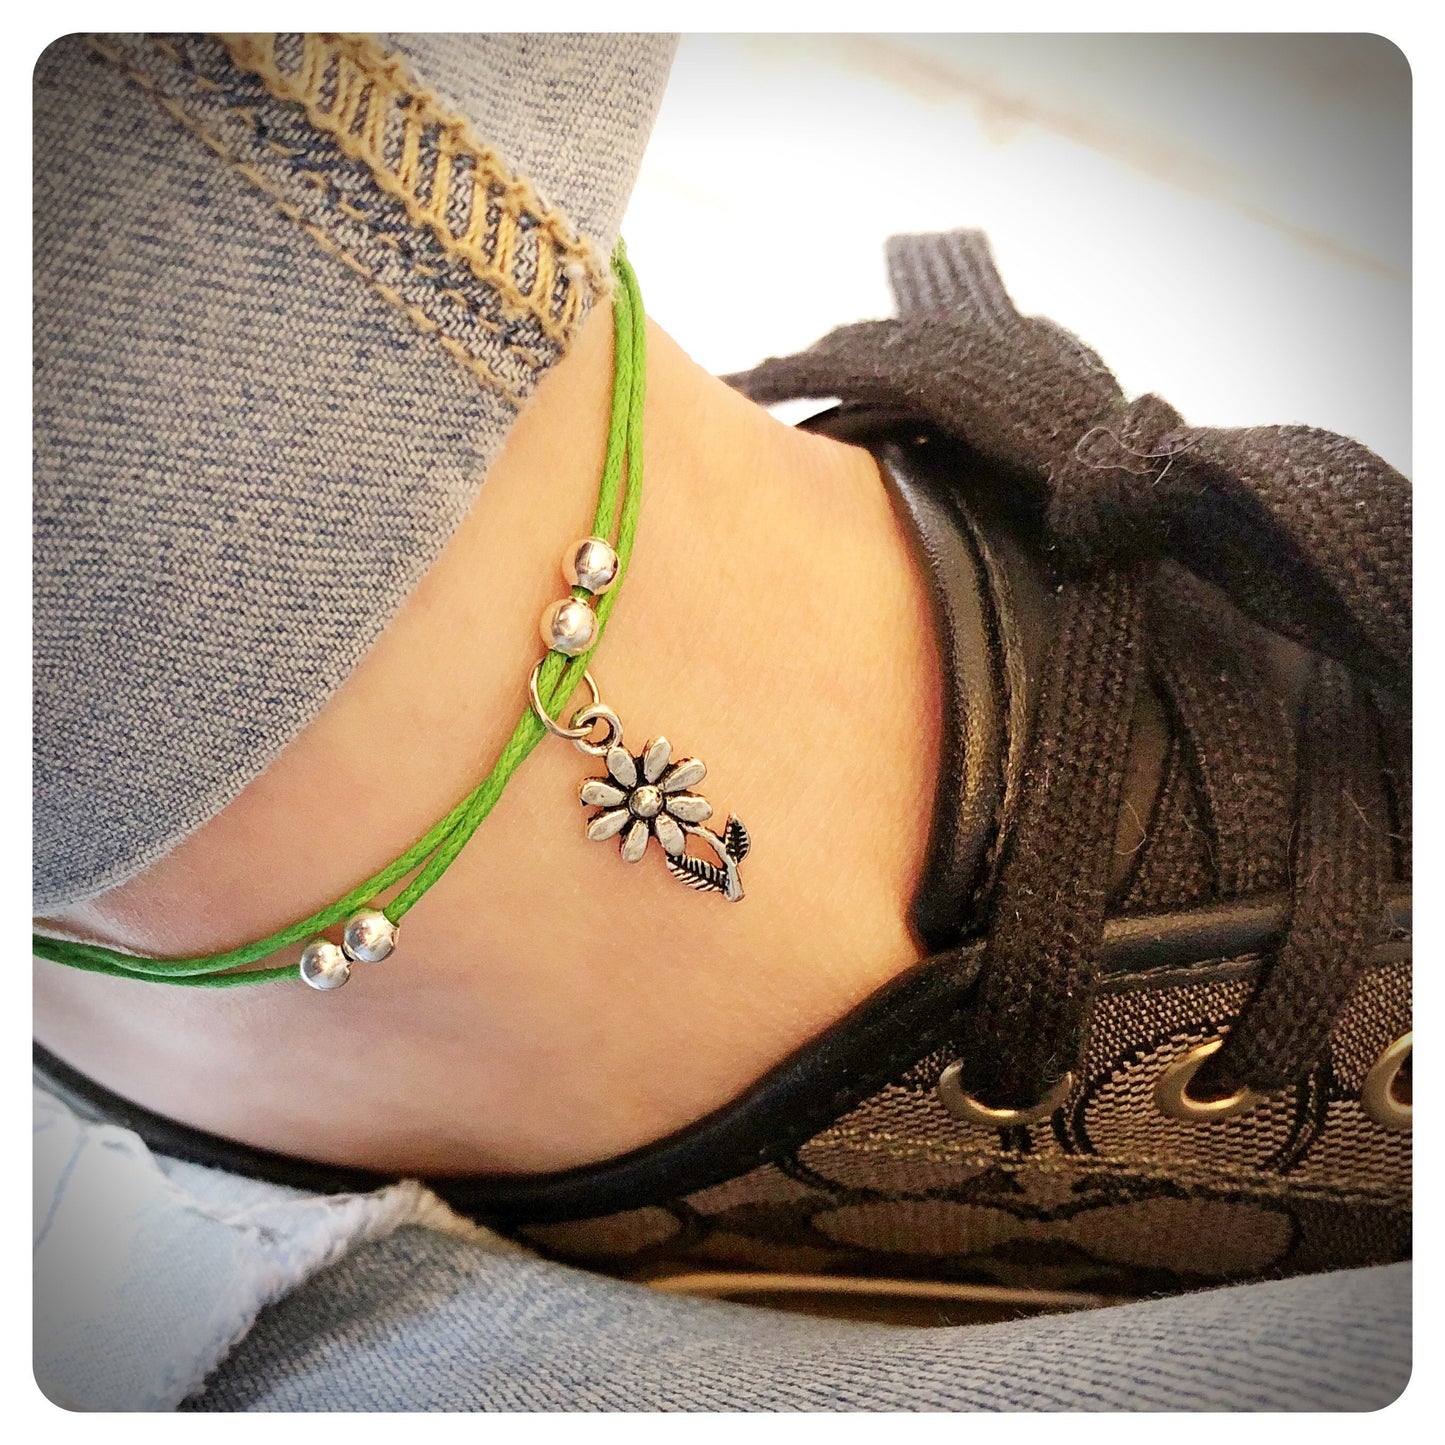 Beaded Flower Charm Anklet, Floral Ankle Bracelet, Festival Boho Anklet, Adjustable Cord Anklet